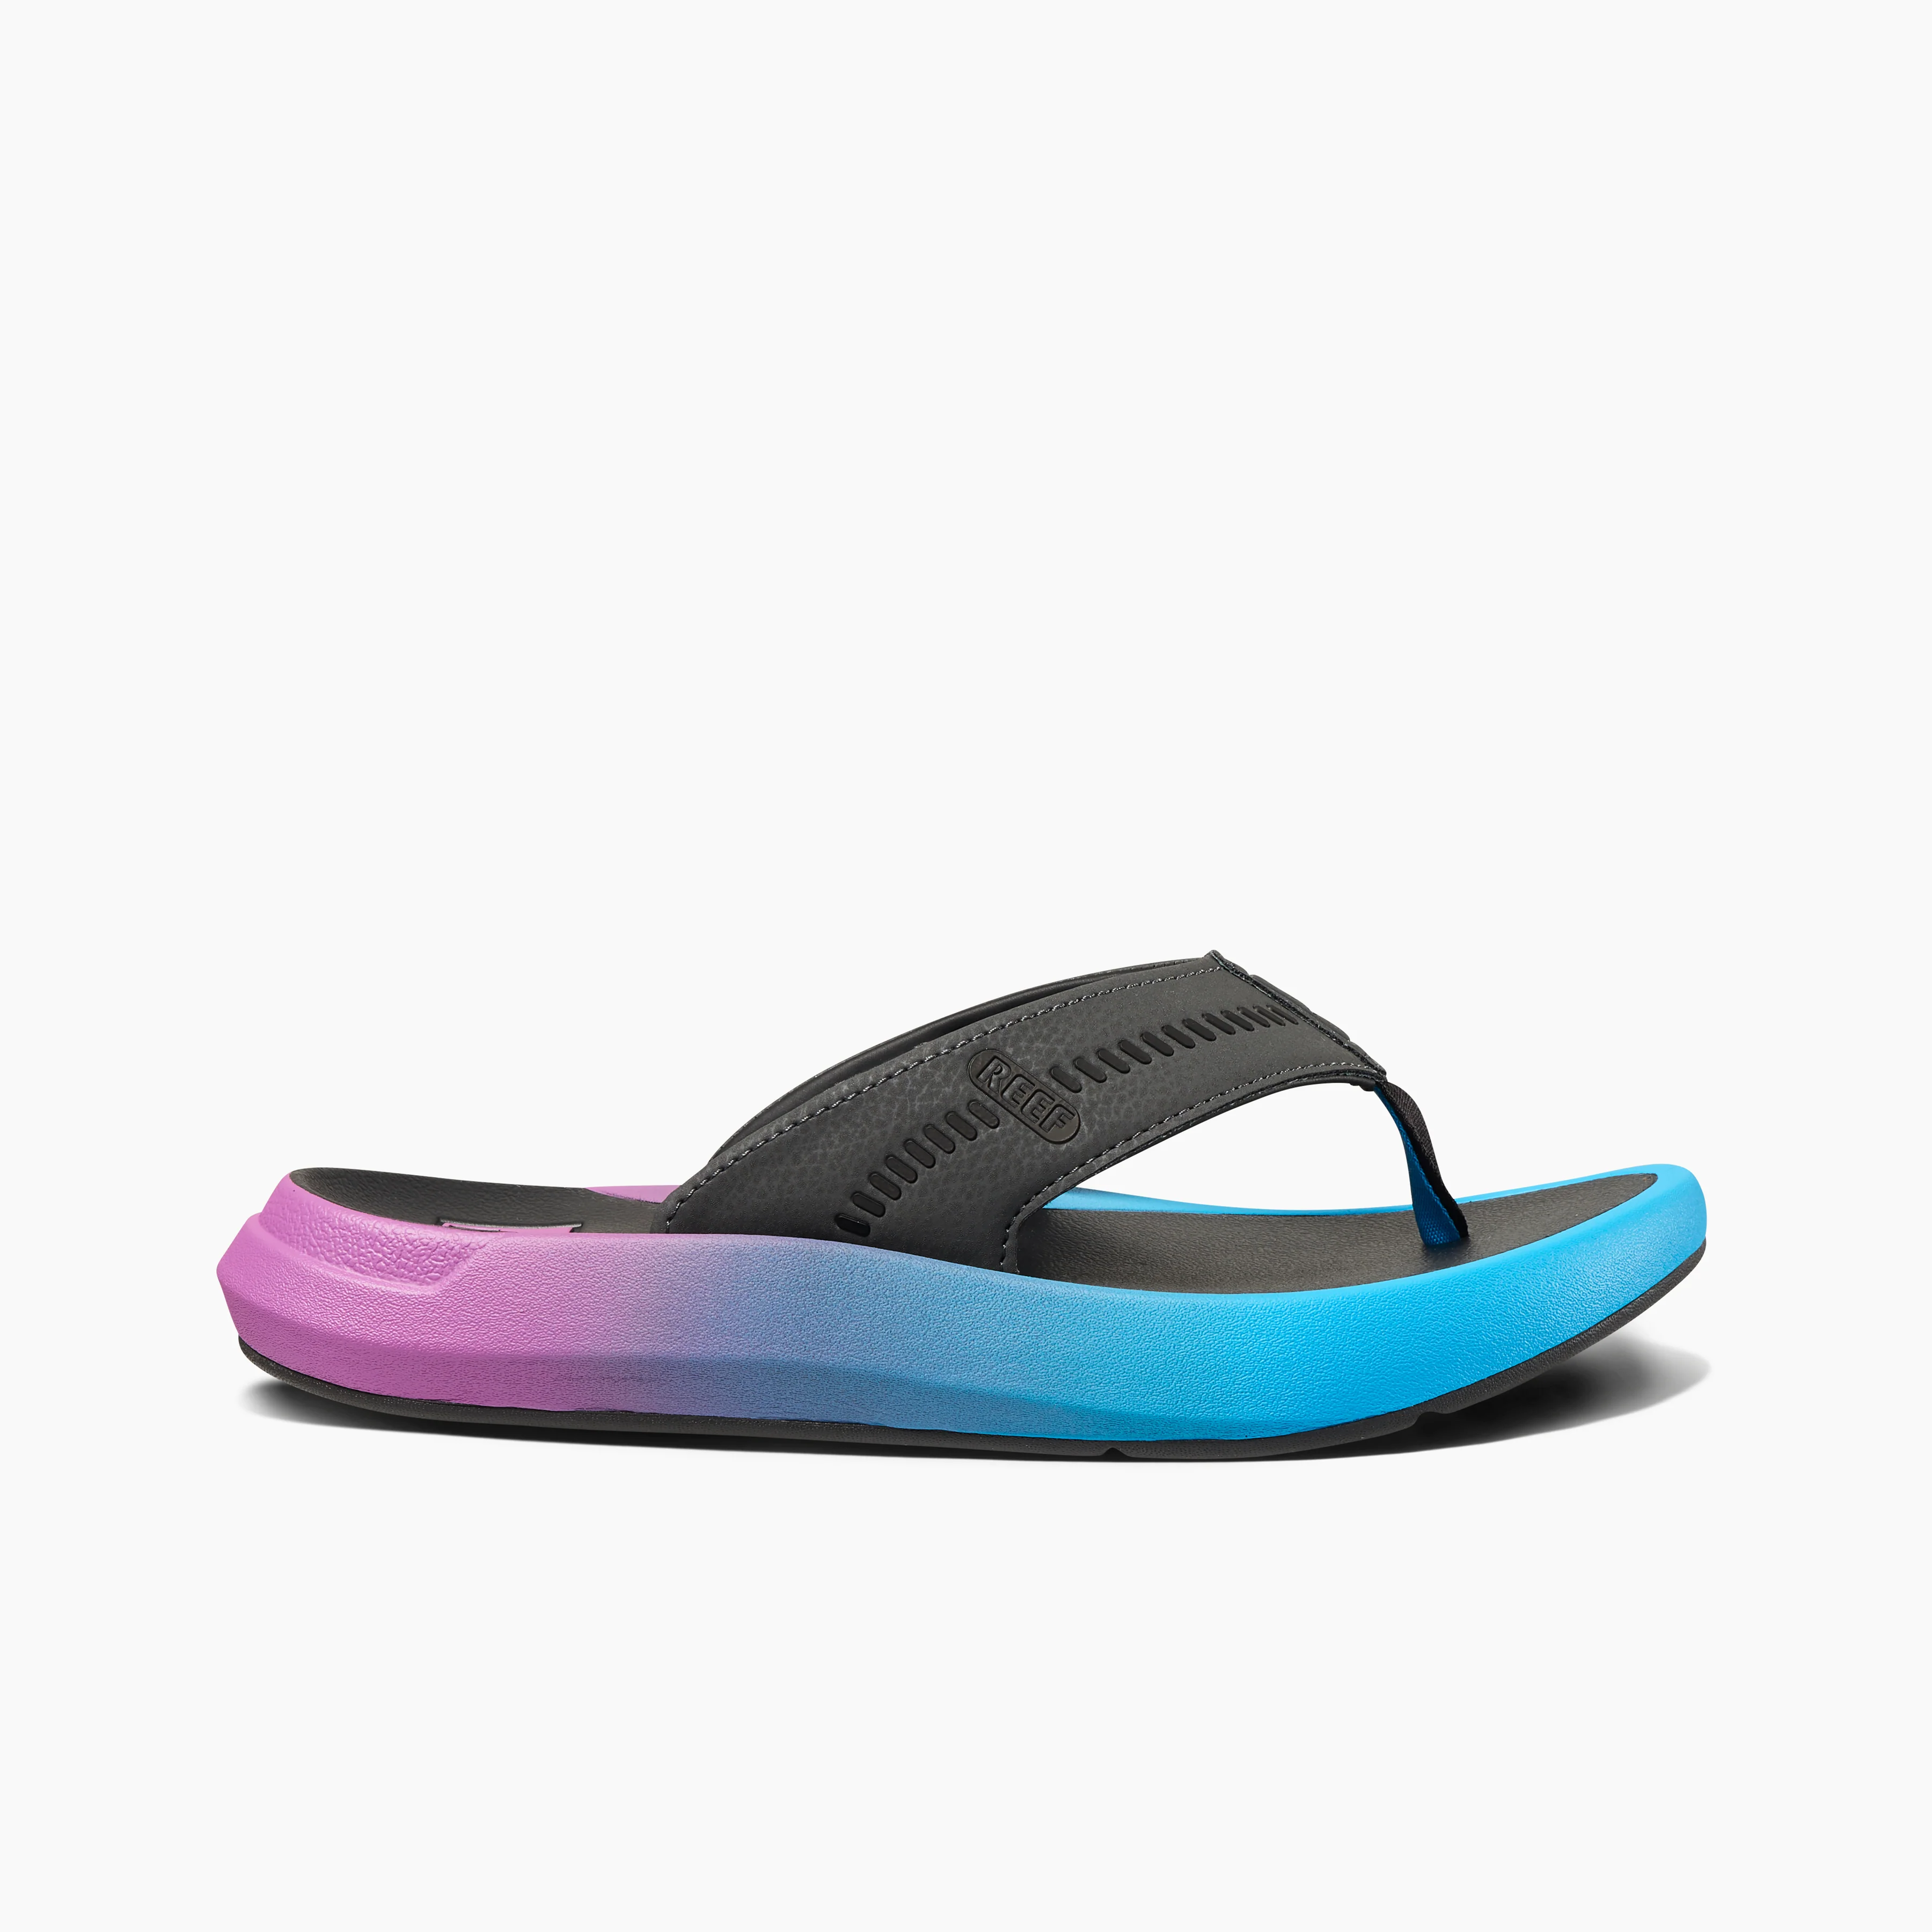 Men's Swellsole Cruiser Sandals in Grey/Purple/Blue side view